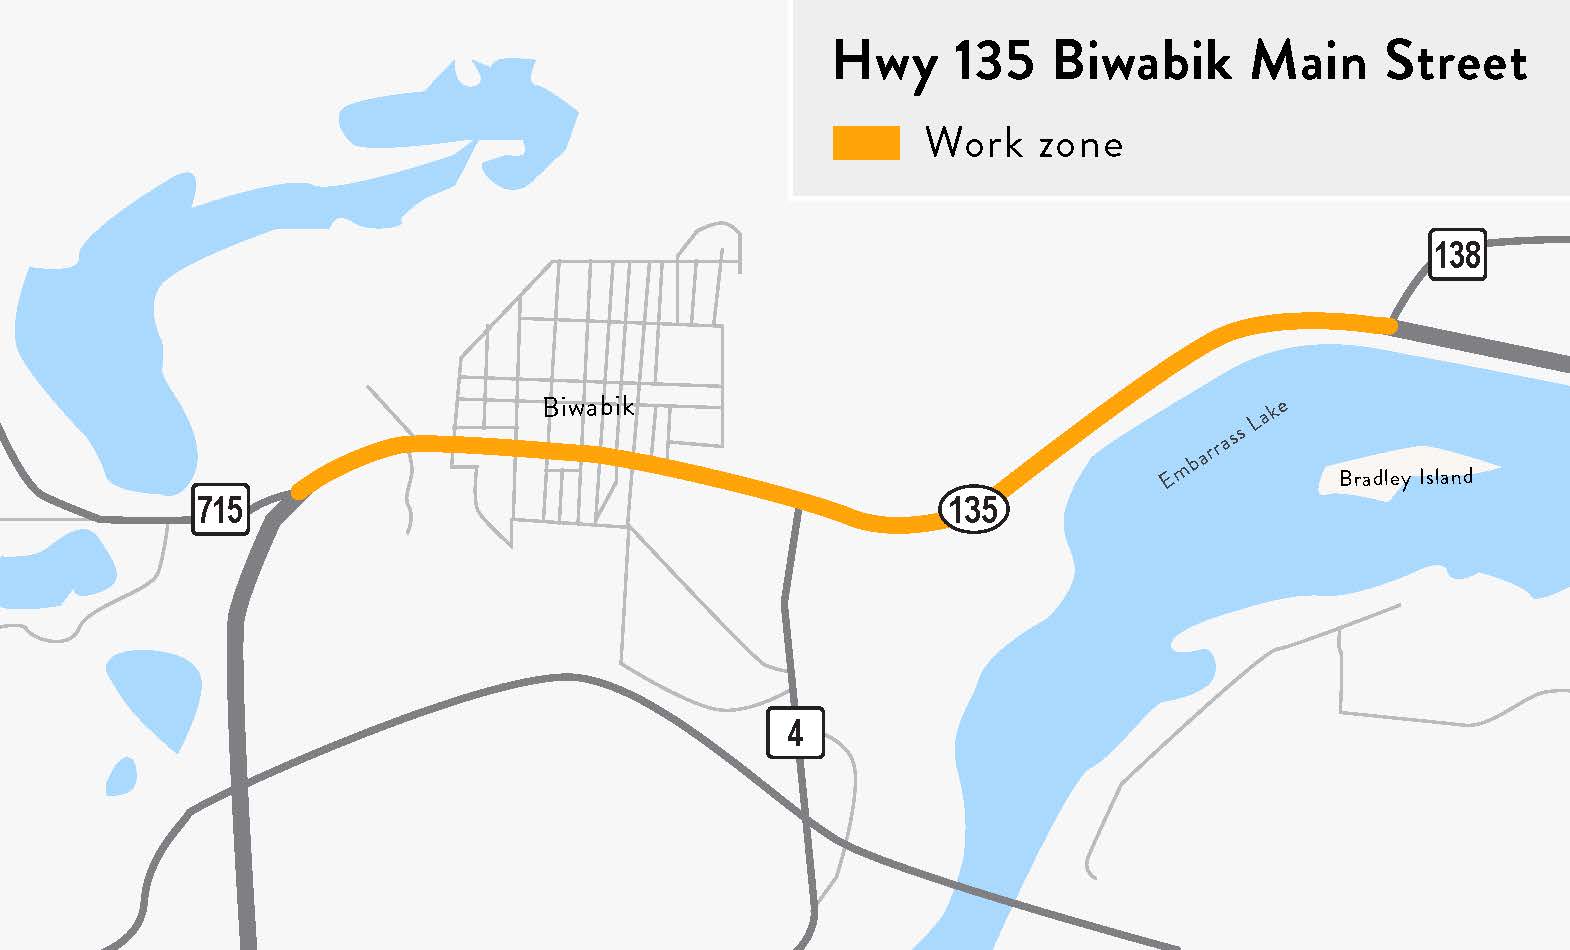 A map of the Hwy 135 Biwabik detour route